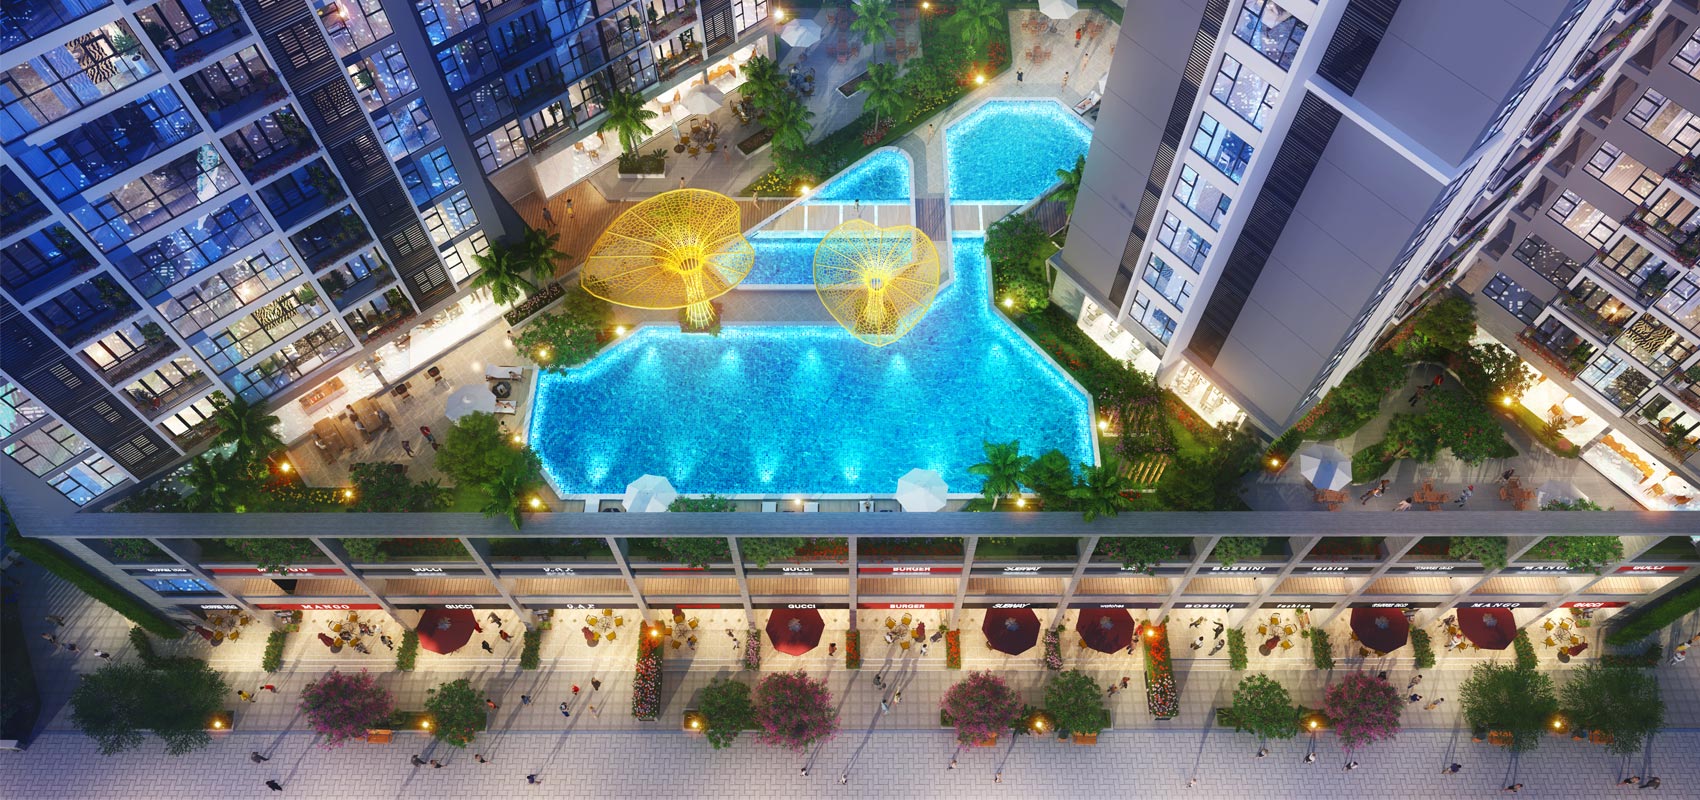 Tiện ích hồ bơi tầng 3 dự án căn hộ chung cư Eco Green Sài Gòn Quận